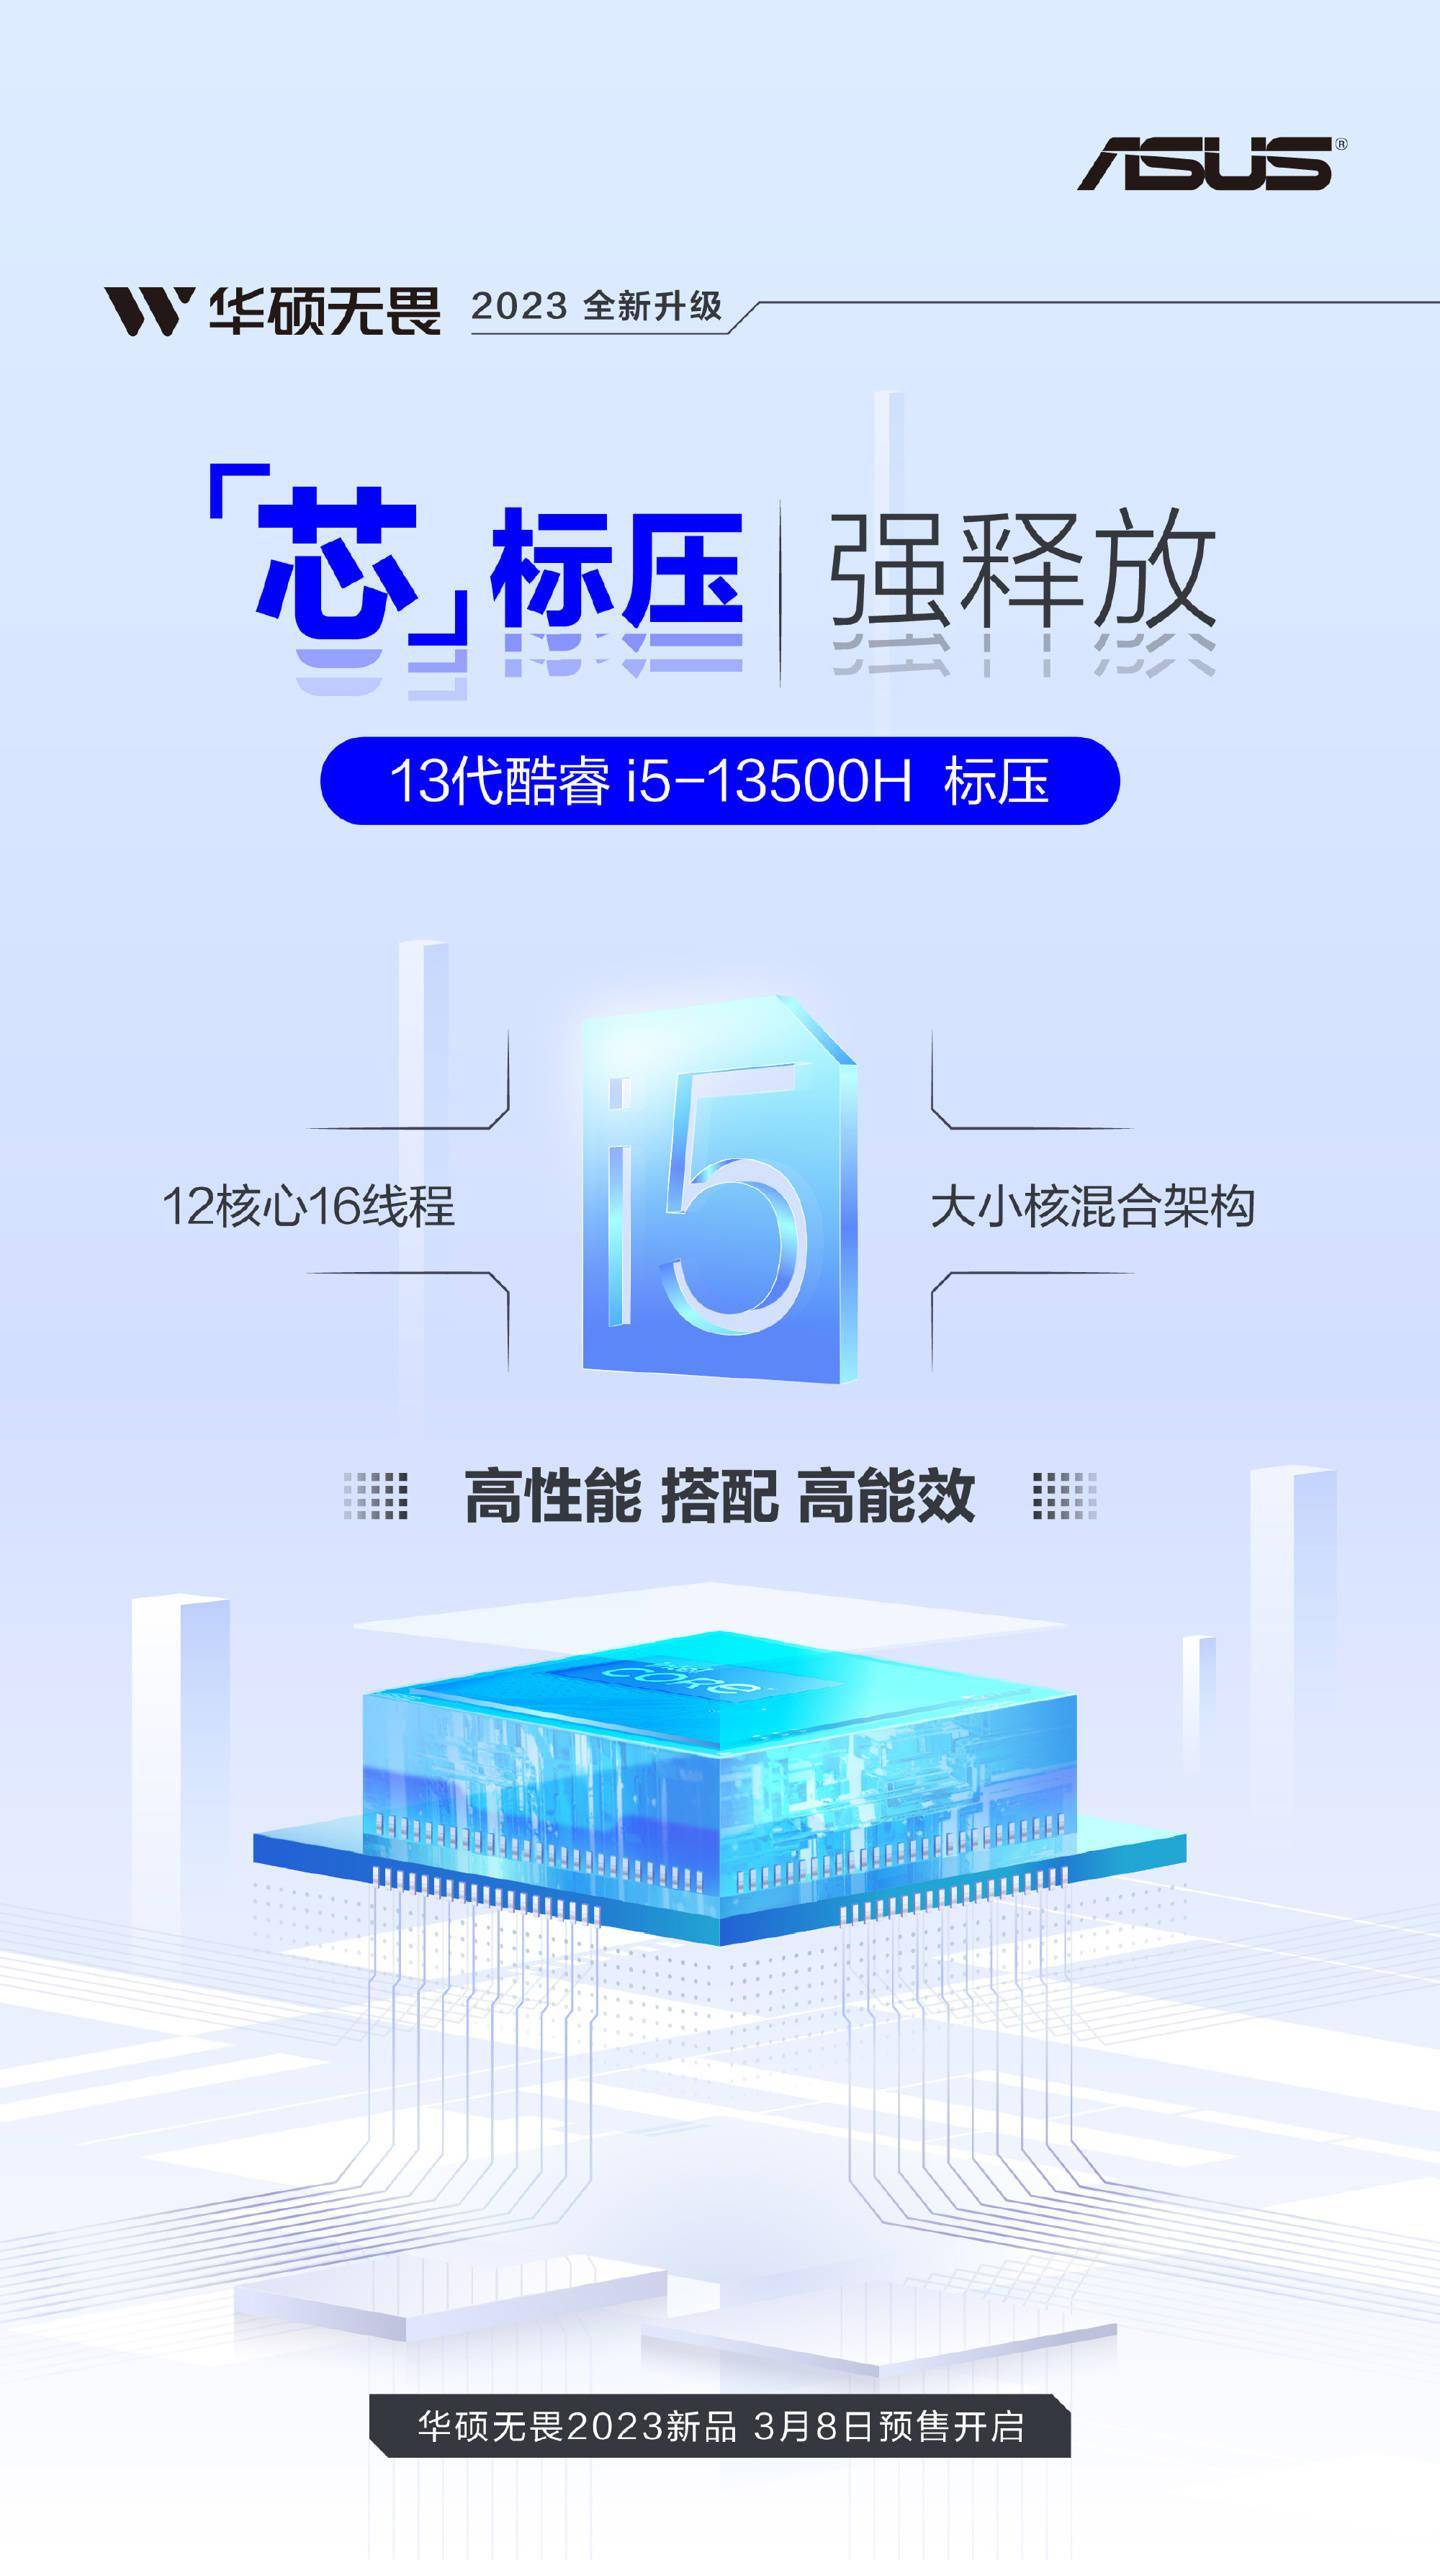 华硕无畏 2023 系列笔记本将在 3 月 8 日开启预售  搭载英特尔i5-13500H 处理器